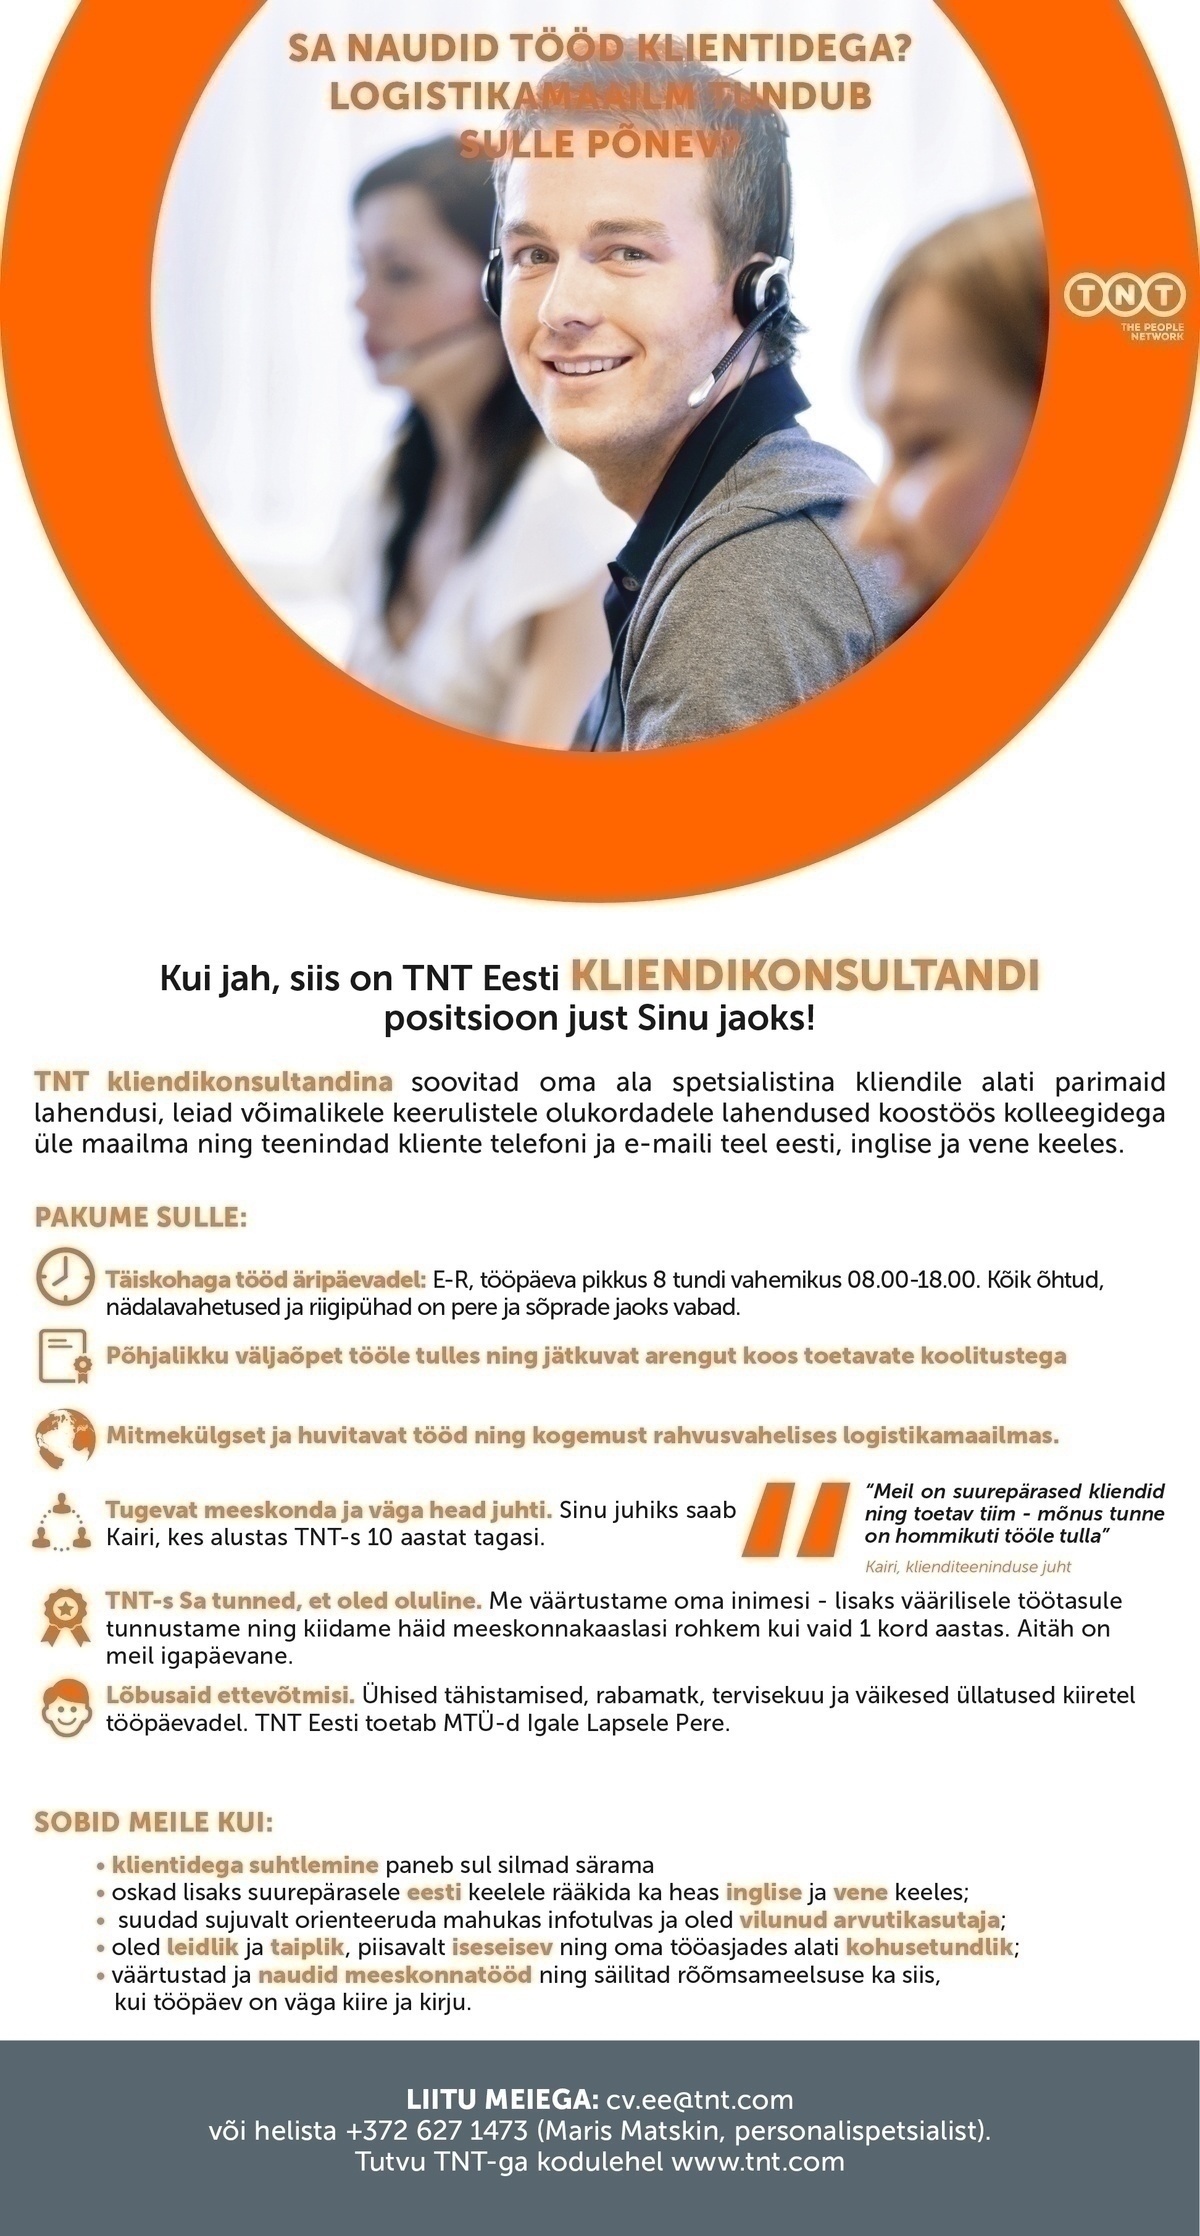 TNT EXPRESS WORLDWIDE EESTI AS Kliendikonsultant